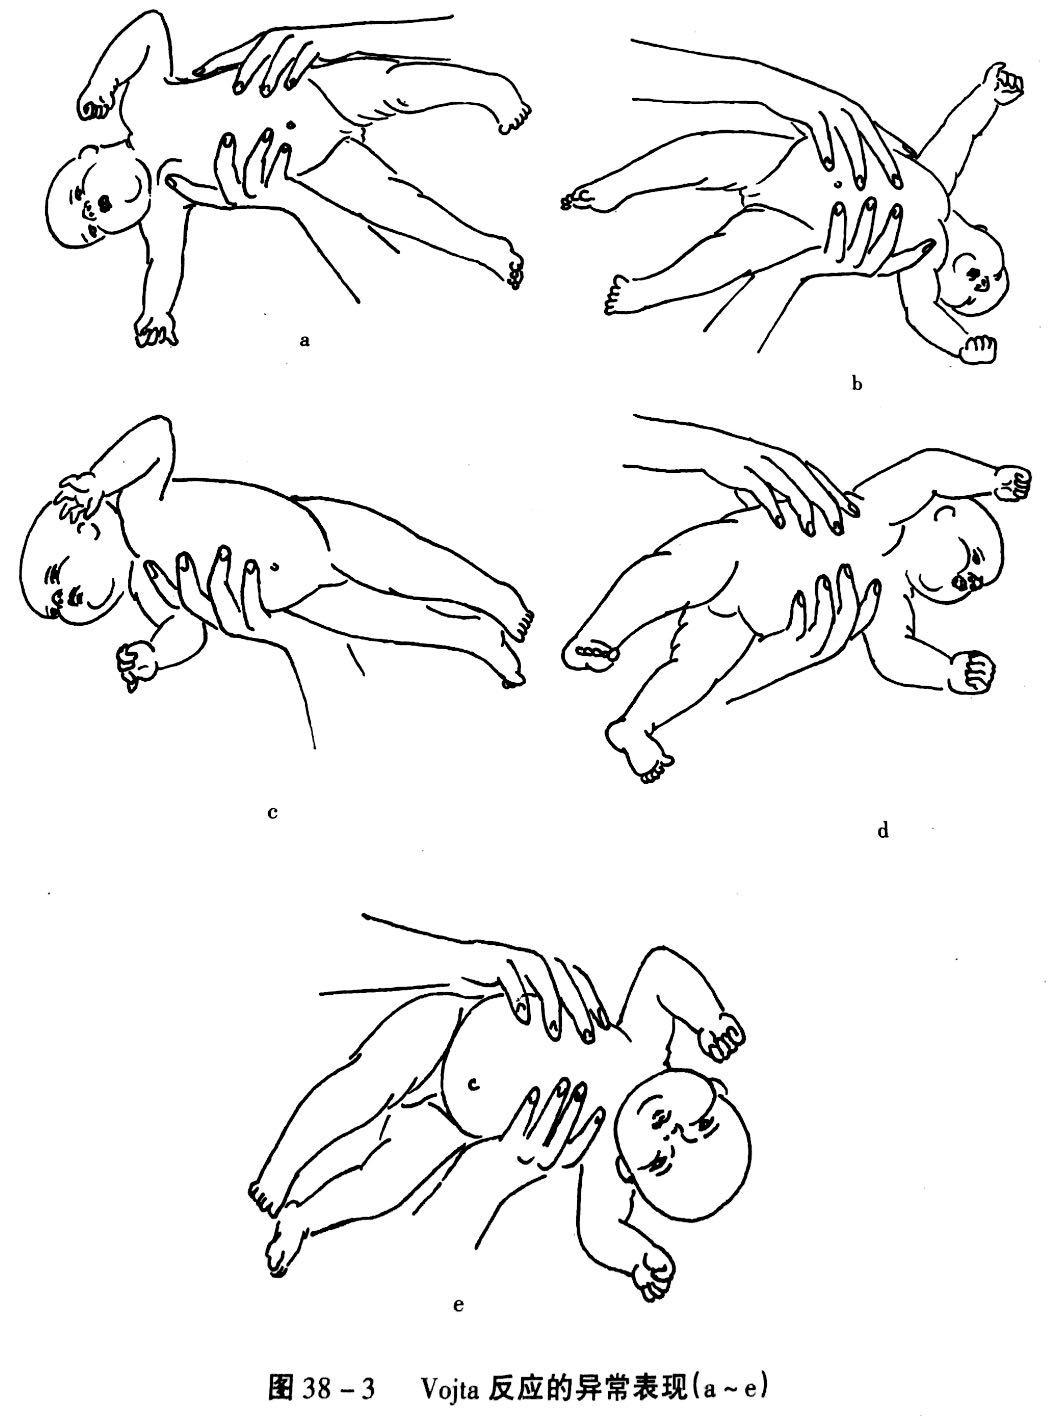 诱导患儿产生翻身和匍匐爬行两种反射性运动的方法